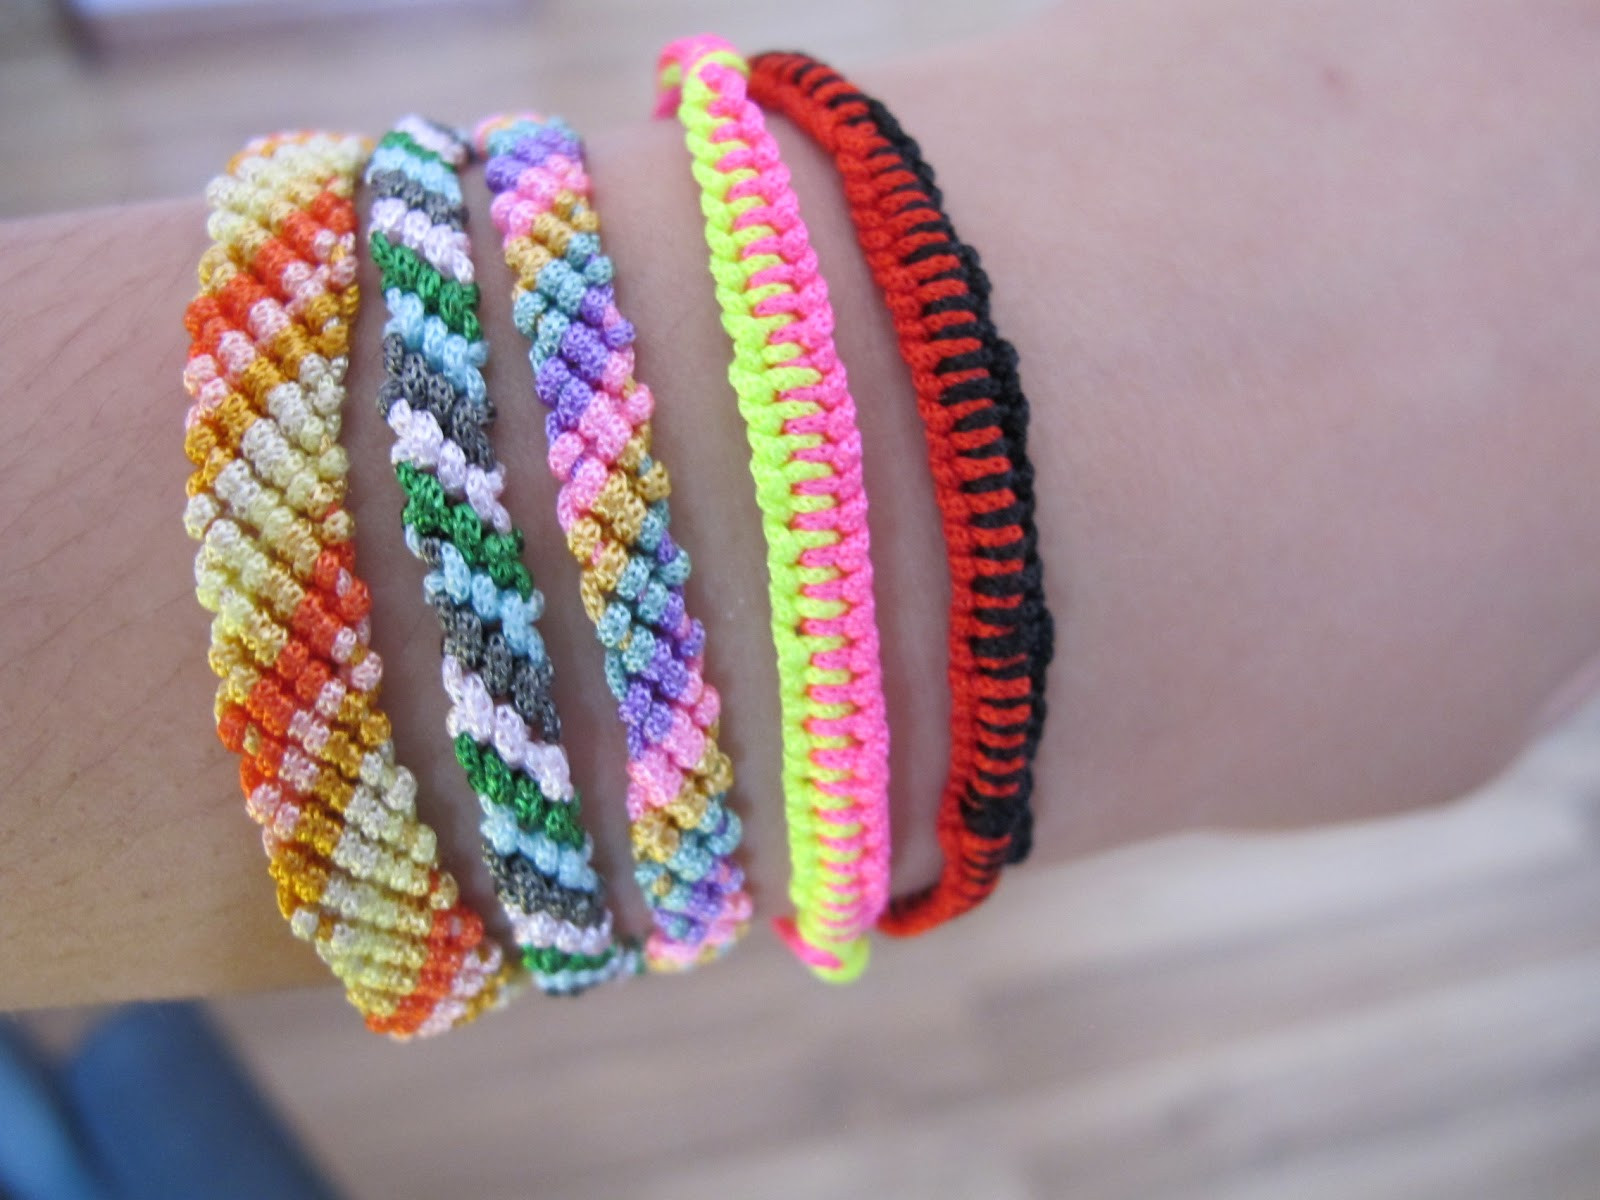 Best ideas about Friendship Bracelets DIY
. Save or Pin Shopaholic s Got Cash DIY FRIENDSHIP BRACELETS Now.